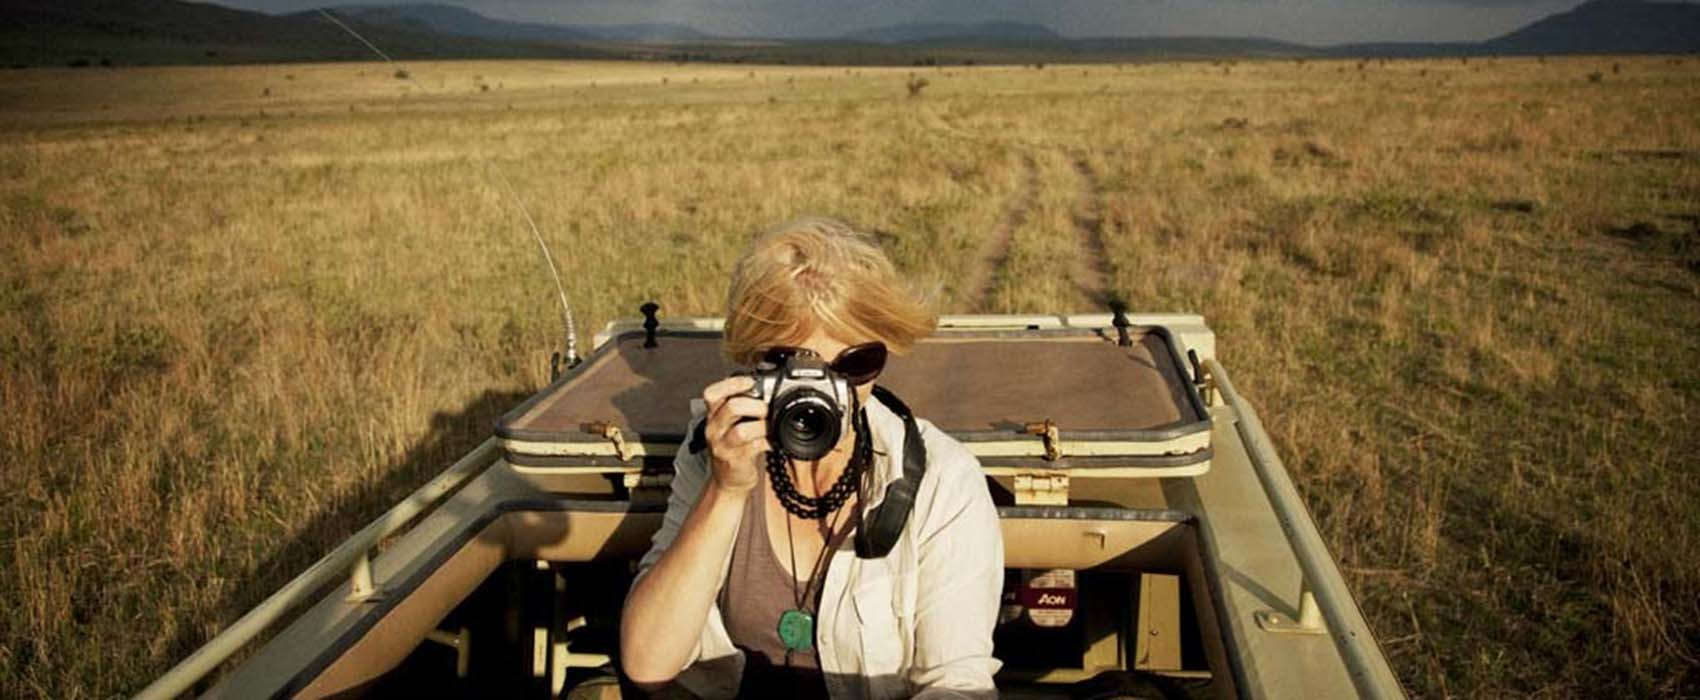 Photographic Safari Africa